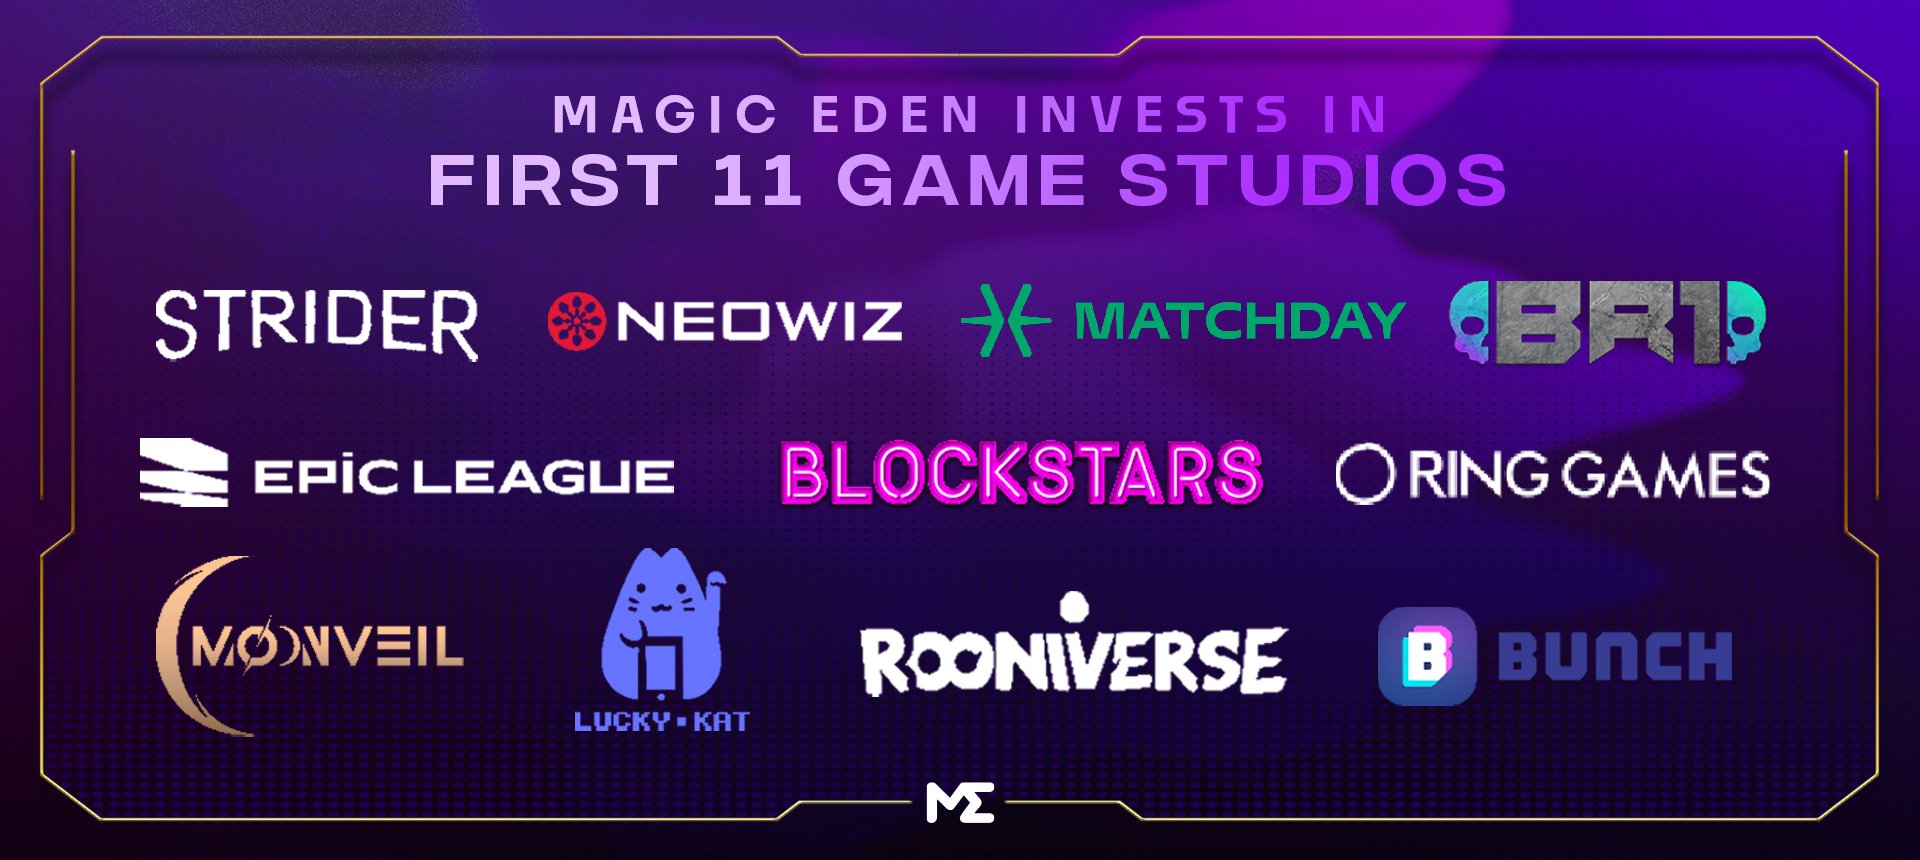 速览Magic Eden投资的11家Web3游戏工作室